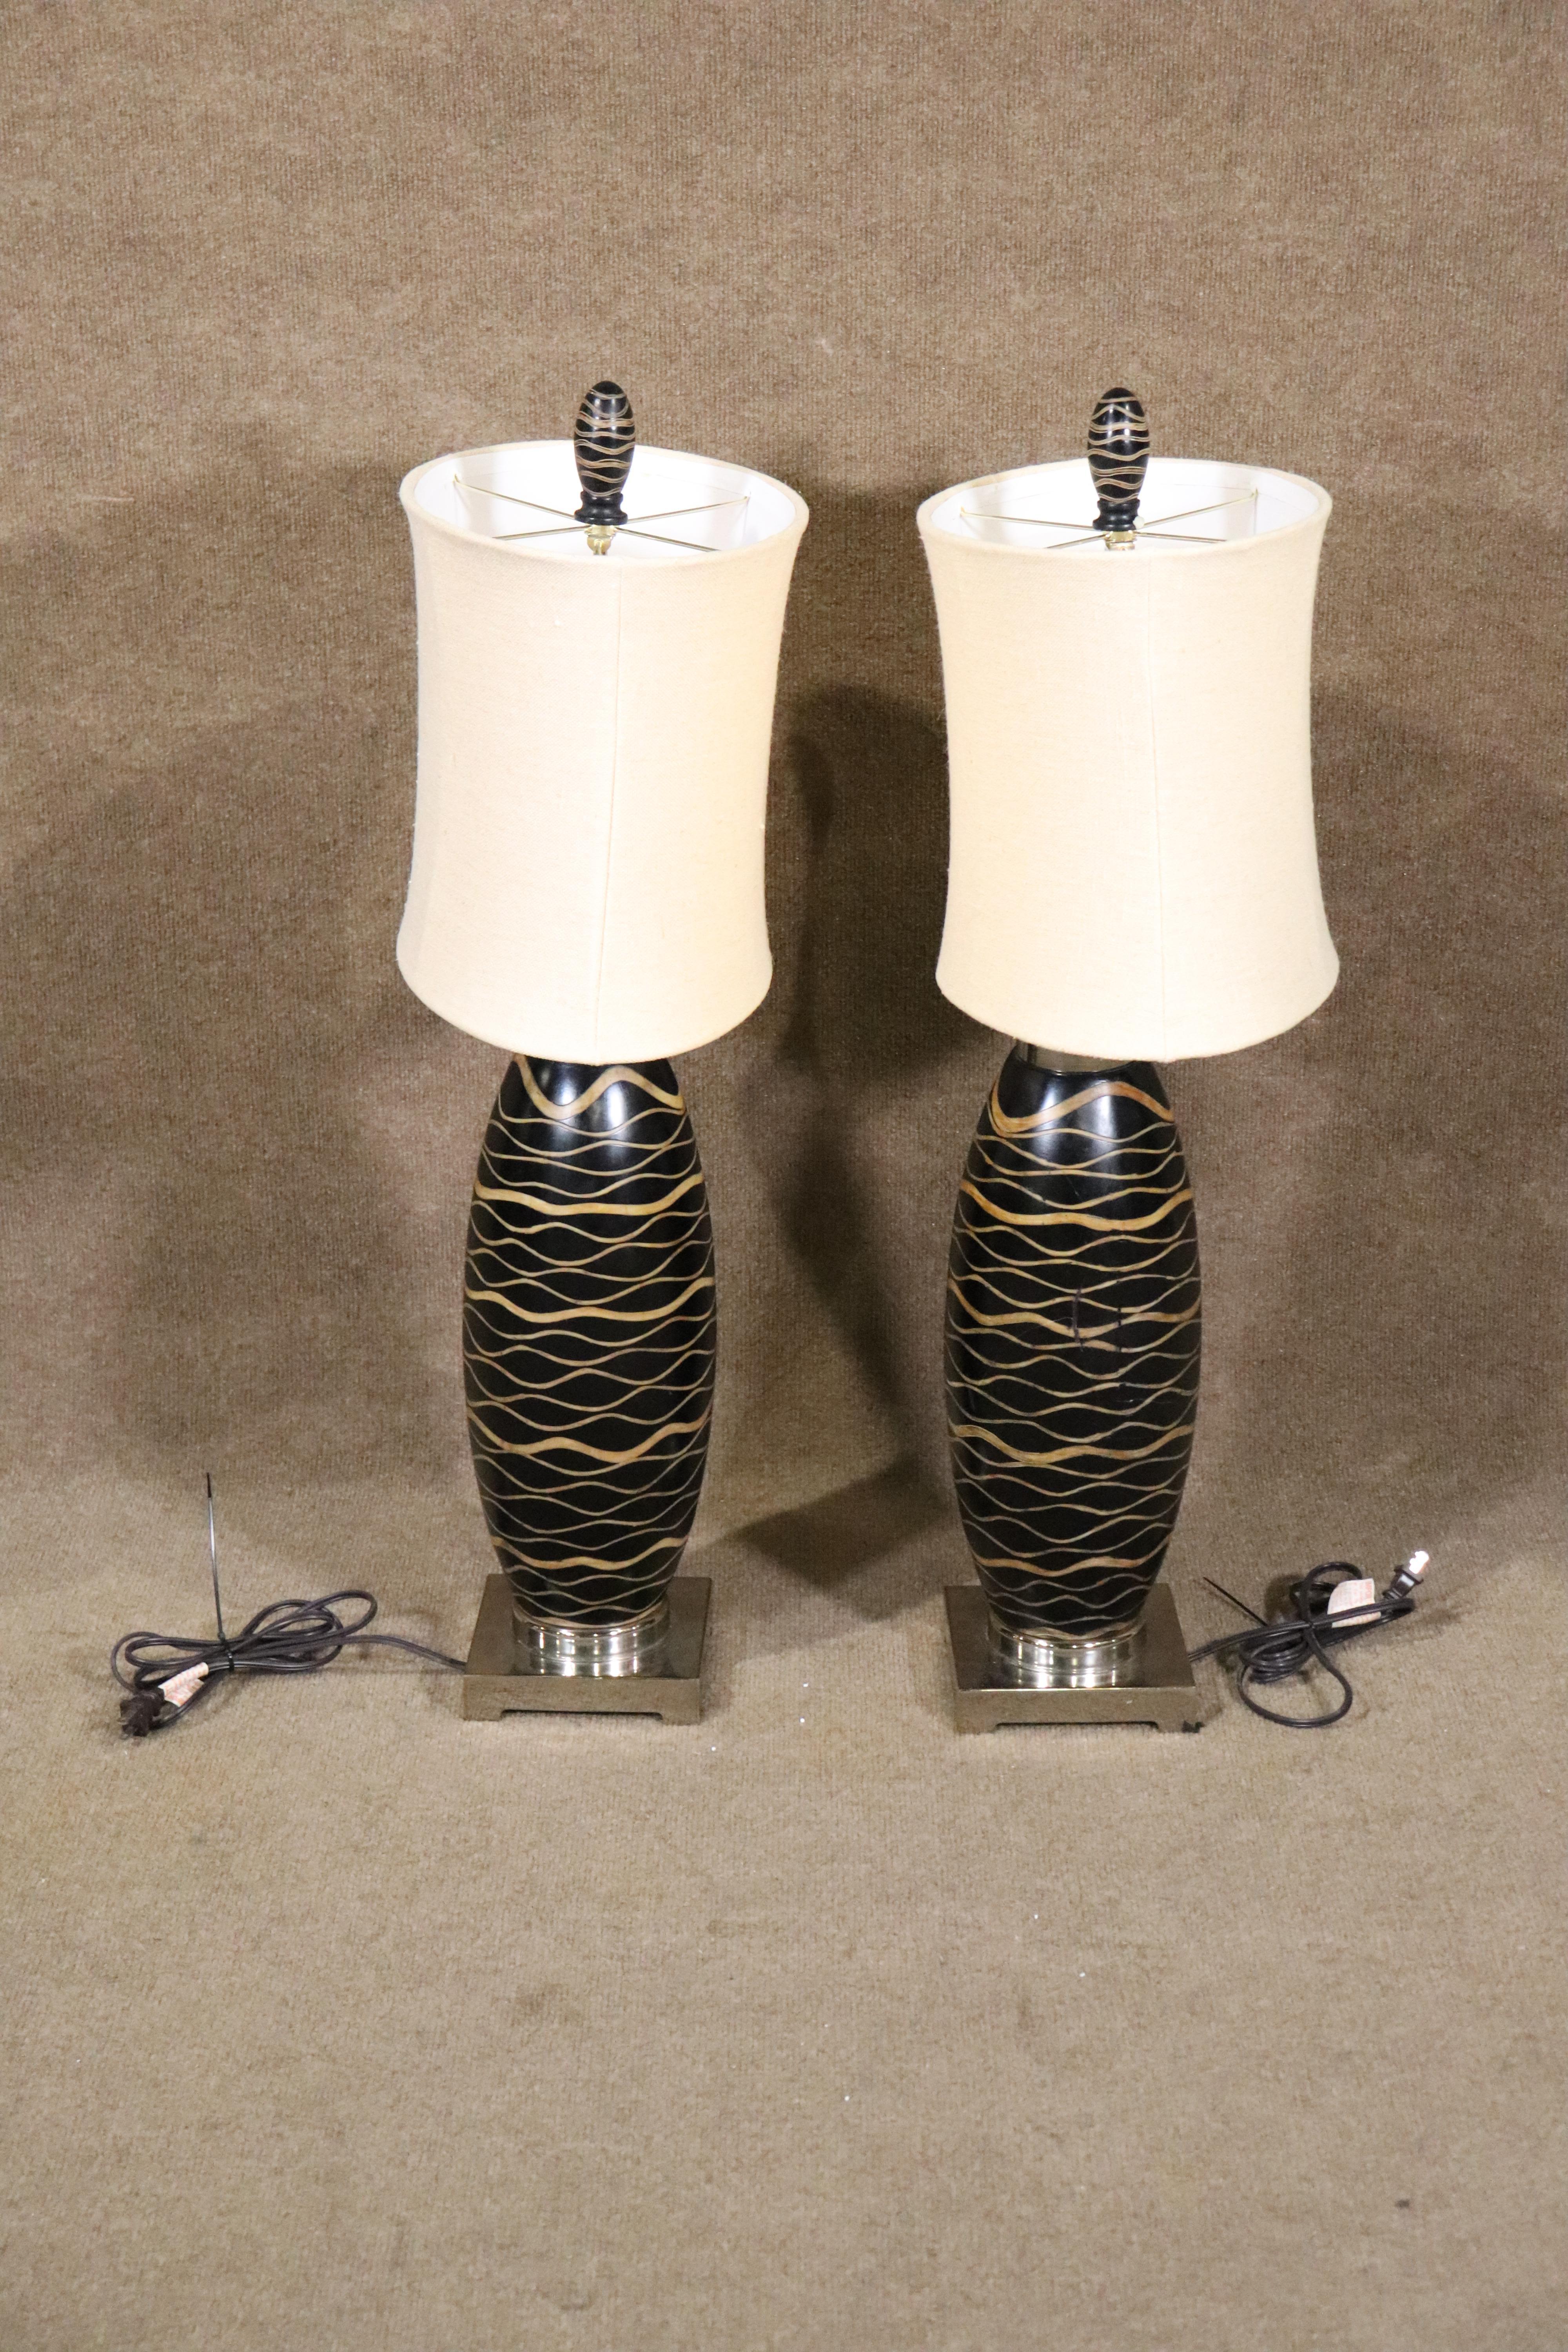 Paire de lampes de table de style déco avec abat-jour ovale. Motif en bois de tigre autour des deux lampes.
Veuillez confirmer la localisation de l'article à NY ou NJ.